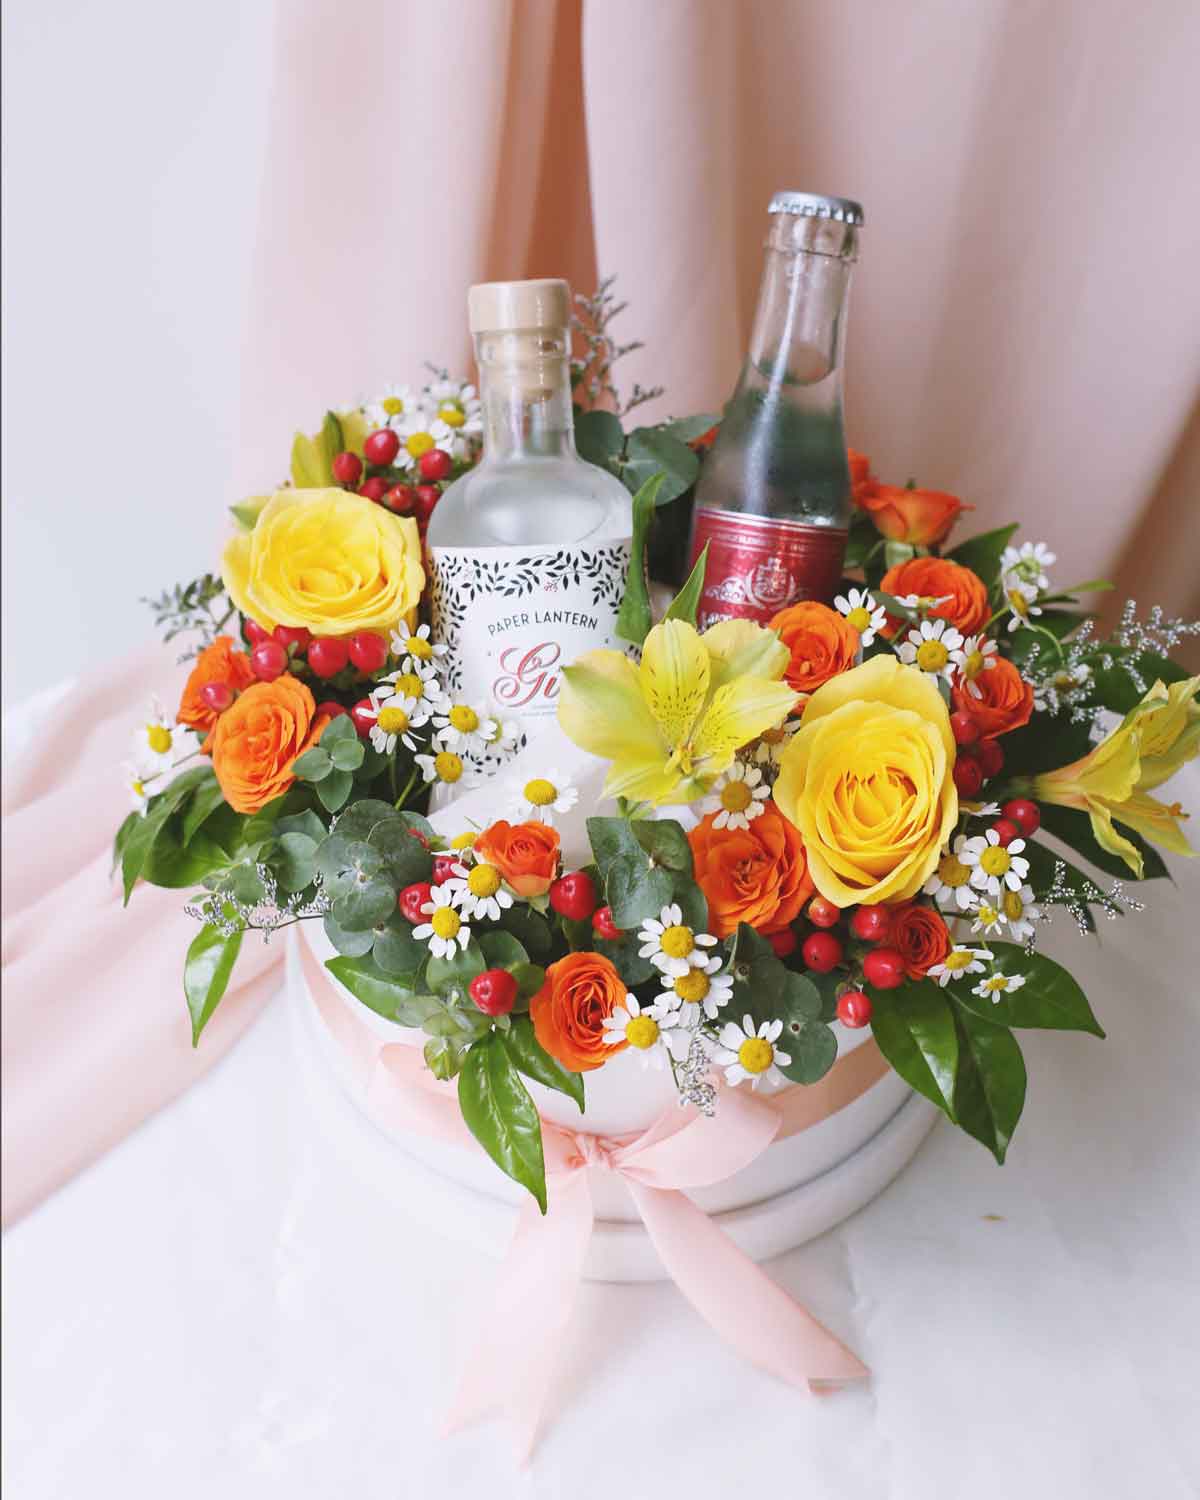 Hình ảnh rượu và hoa sinh nhật